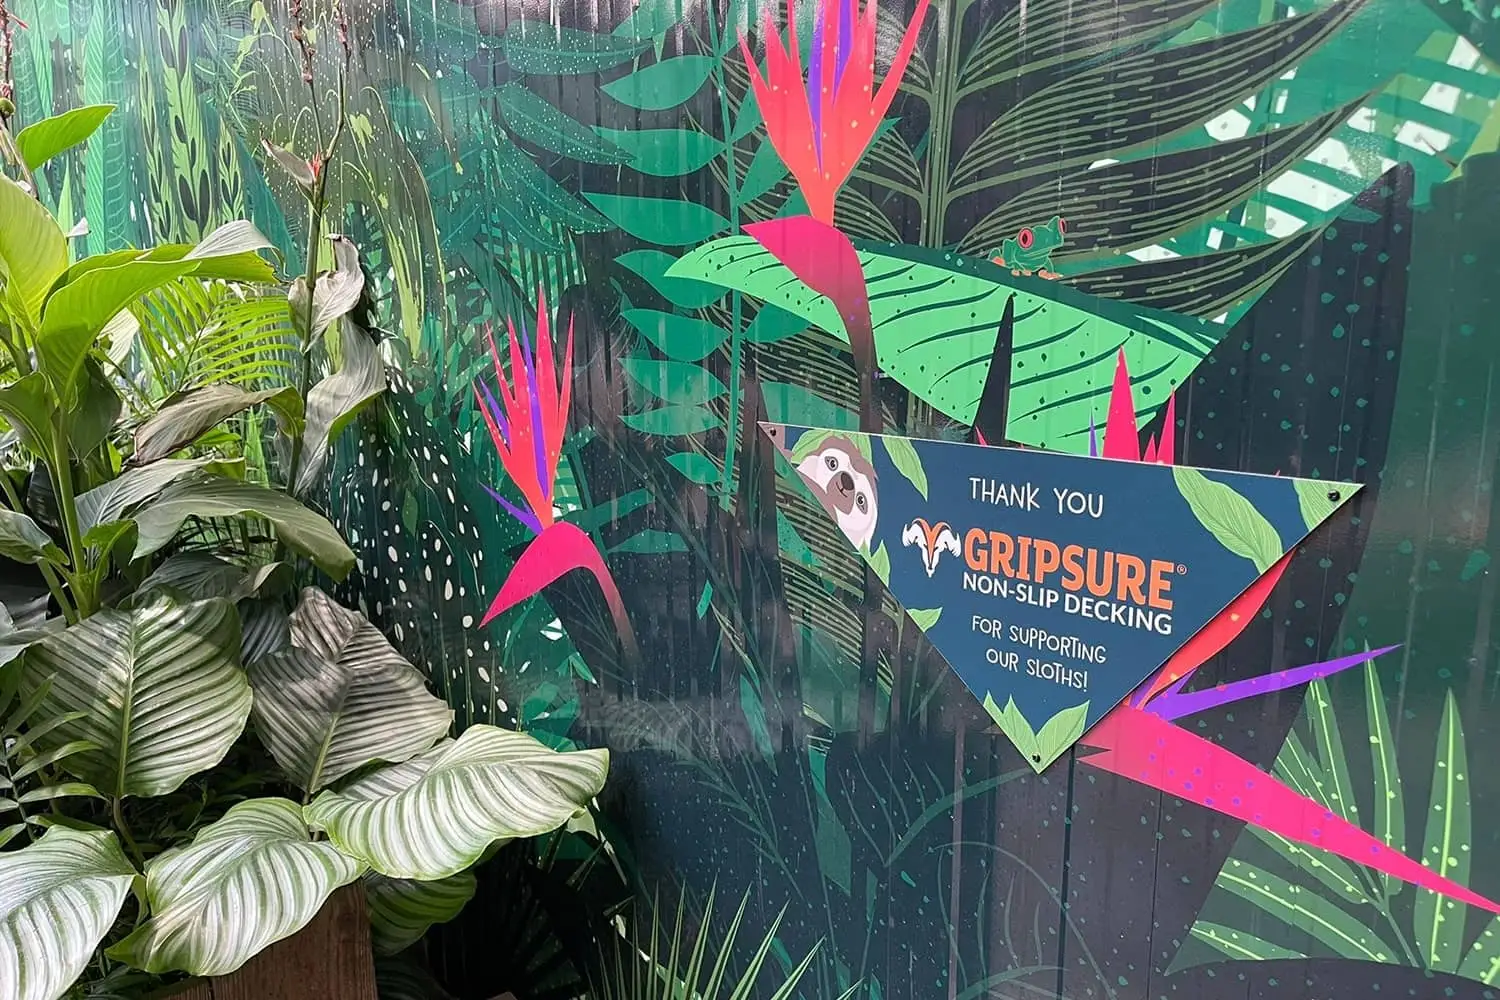 Gripsure Sponsors Sloth Enclosure At Edinburgh Zoo